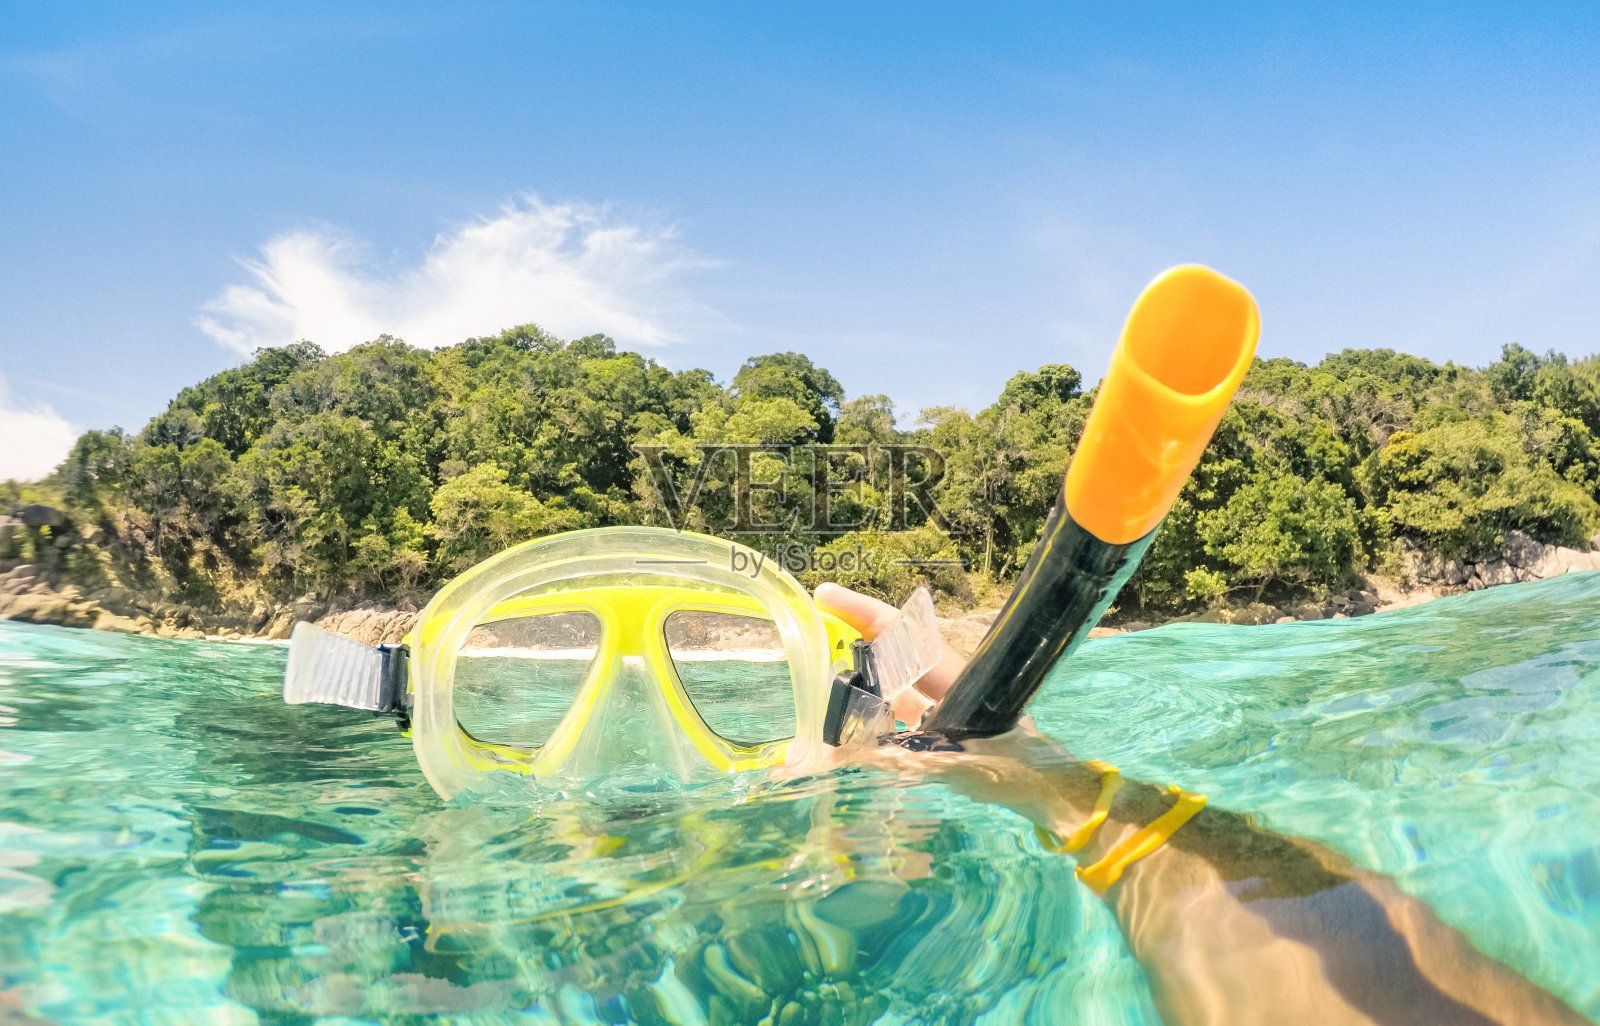 冒险的家伙在水下拍摄浮潜面具-冒险旅行的生活方式享受在Similan群岛海滩的快乐时刻-环游世界自然奇观-温暖的绿松石滤镜照片摄影图片